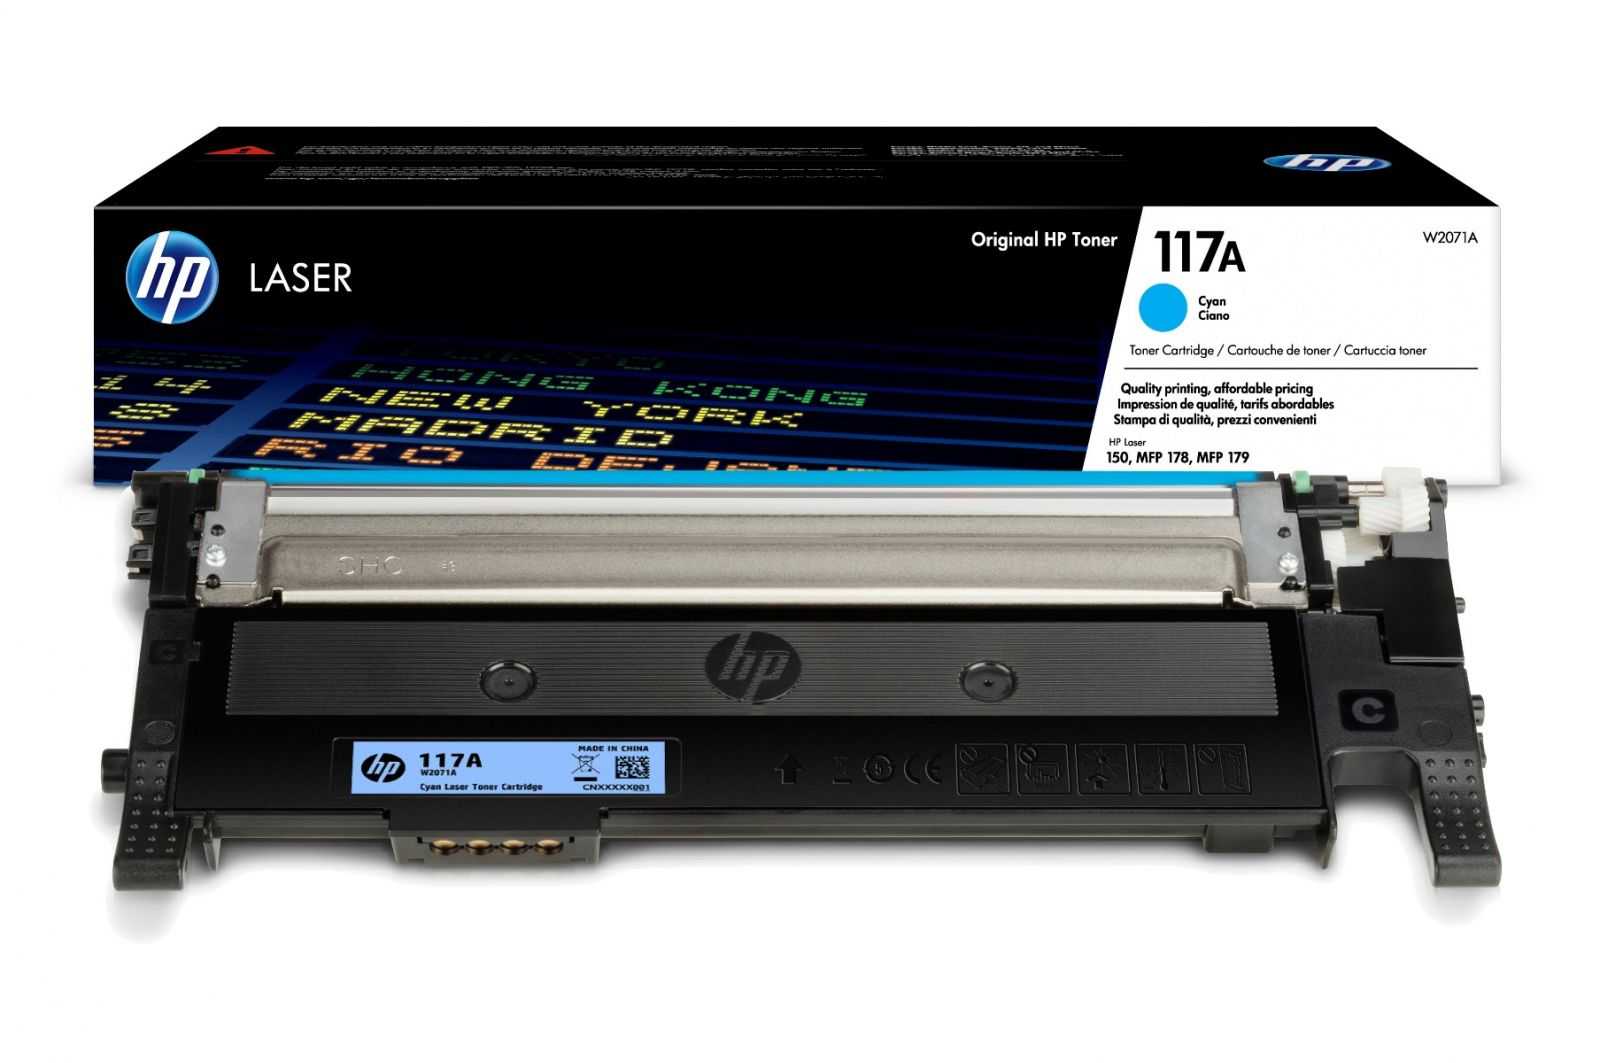 Монитор HP W2072a - подробные характеристики обзоры видео фото Цены в интернет-магазинах где можно купить монитор HP W2072a